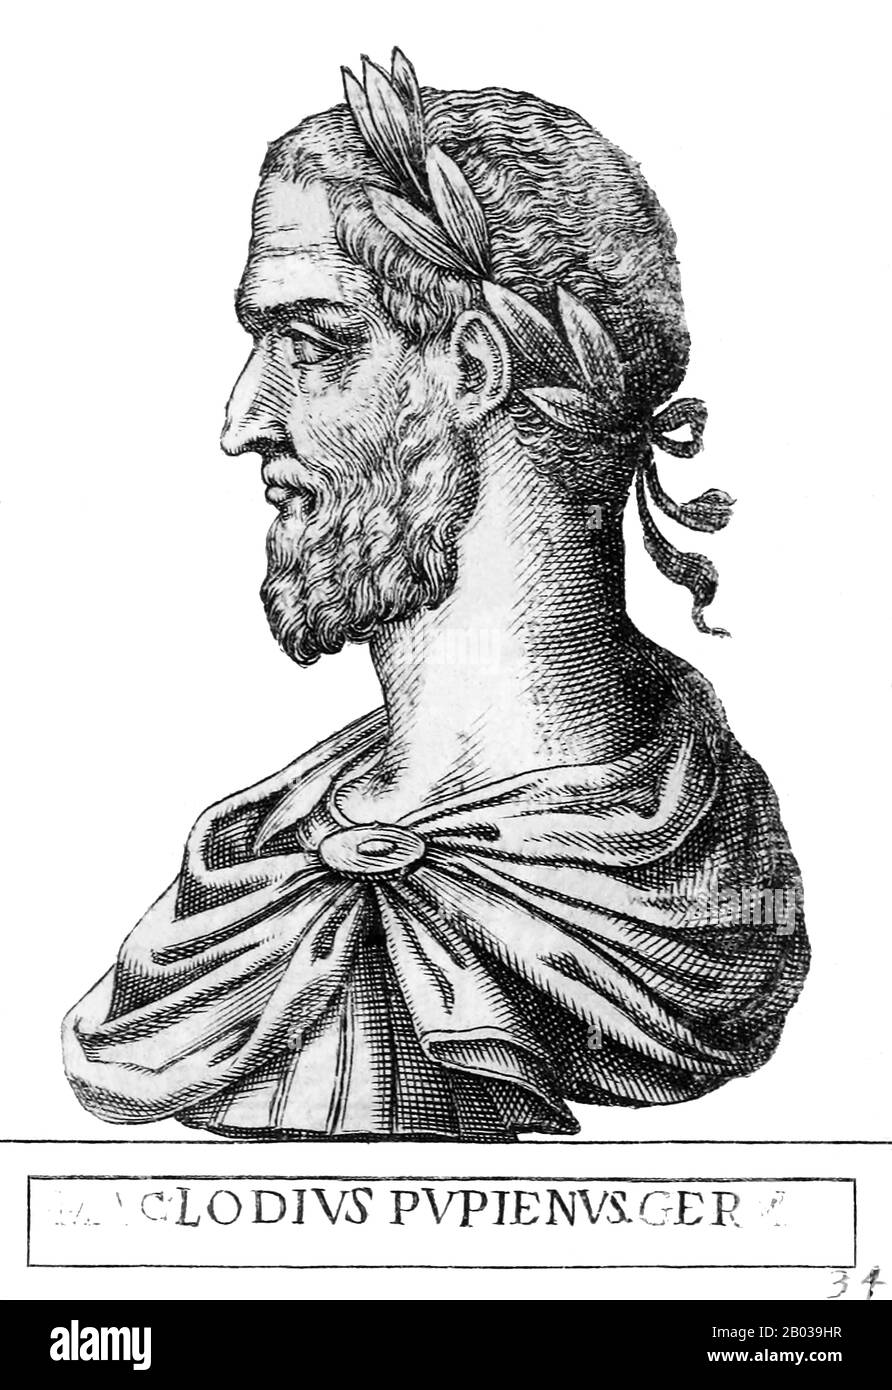 Pupienus (165/170-238), noto anche come Pupienus Maximus, era senatore del Senato romano che era salito al potere e all'influenza attraverso il successo militare sotto il dominio della dinastia Severan. Ha servito due termini come Console, e divenne un membro importante del Senato. Quando Gordian i e suo figlio furono proclamati imperatori nel 238, il Senato li riconobbe immediatamente in dispregio dell'imperatore Massimino Thrax. Pupienus, un uomo anziano di allora, è stato messo su un comitato per coordinare gli sforzi per contrastare Maximinus fino a quando i Goridiani potrebbero arrivare a Roma. I Goridi morirono meno di un mese dopo il loro decl Foto Stock